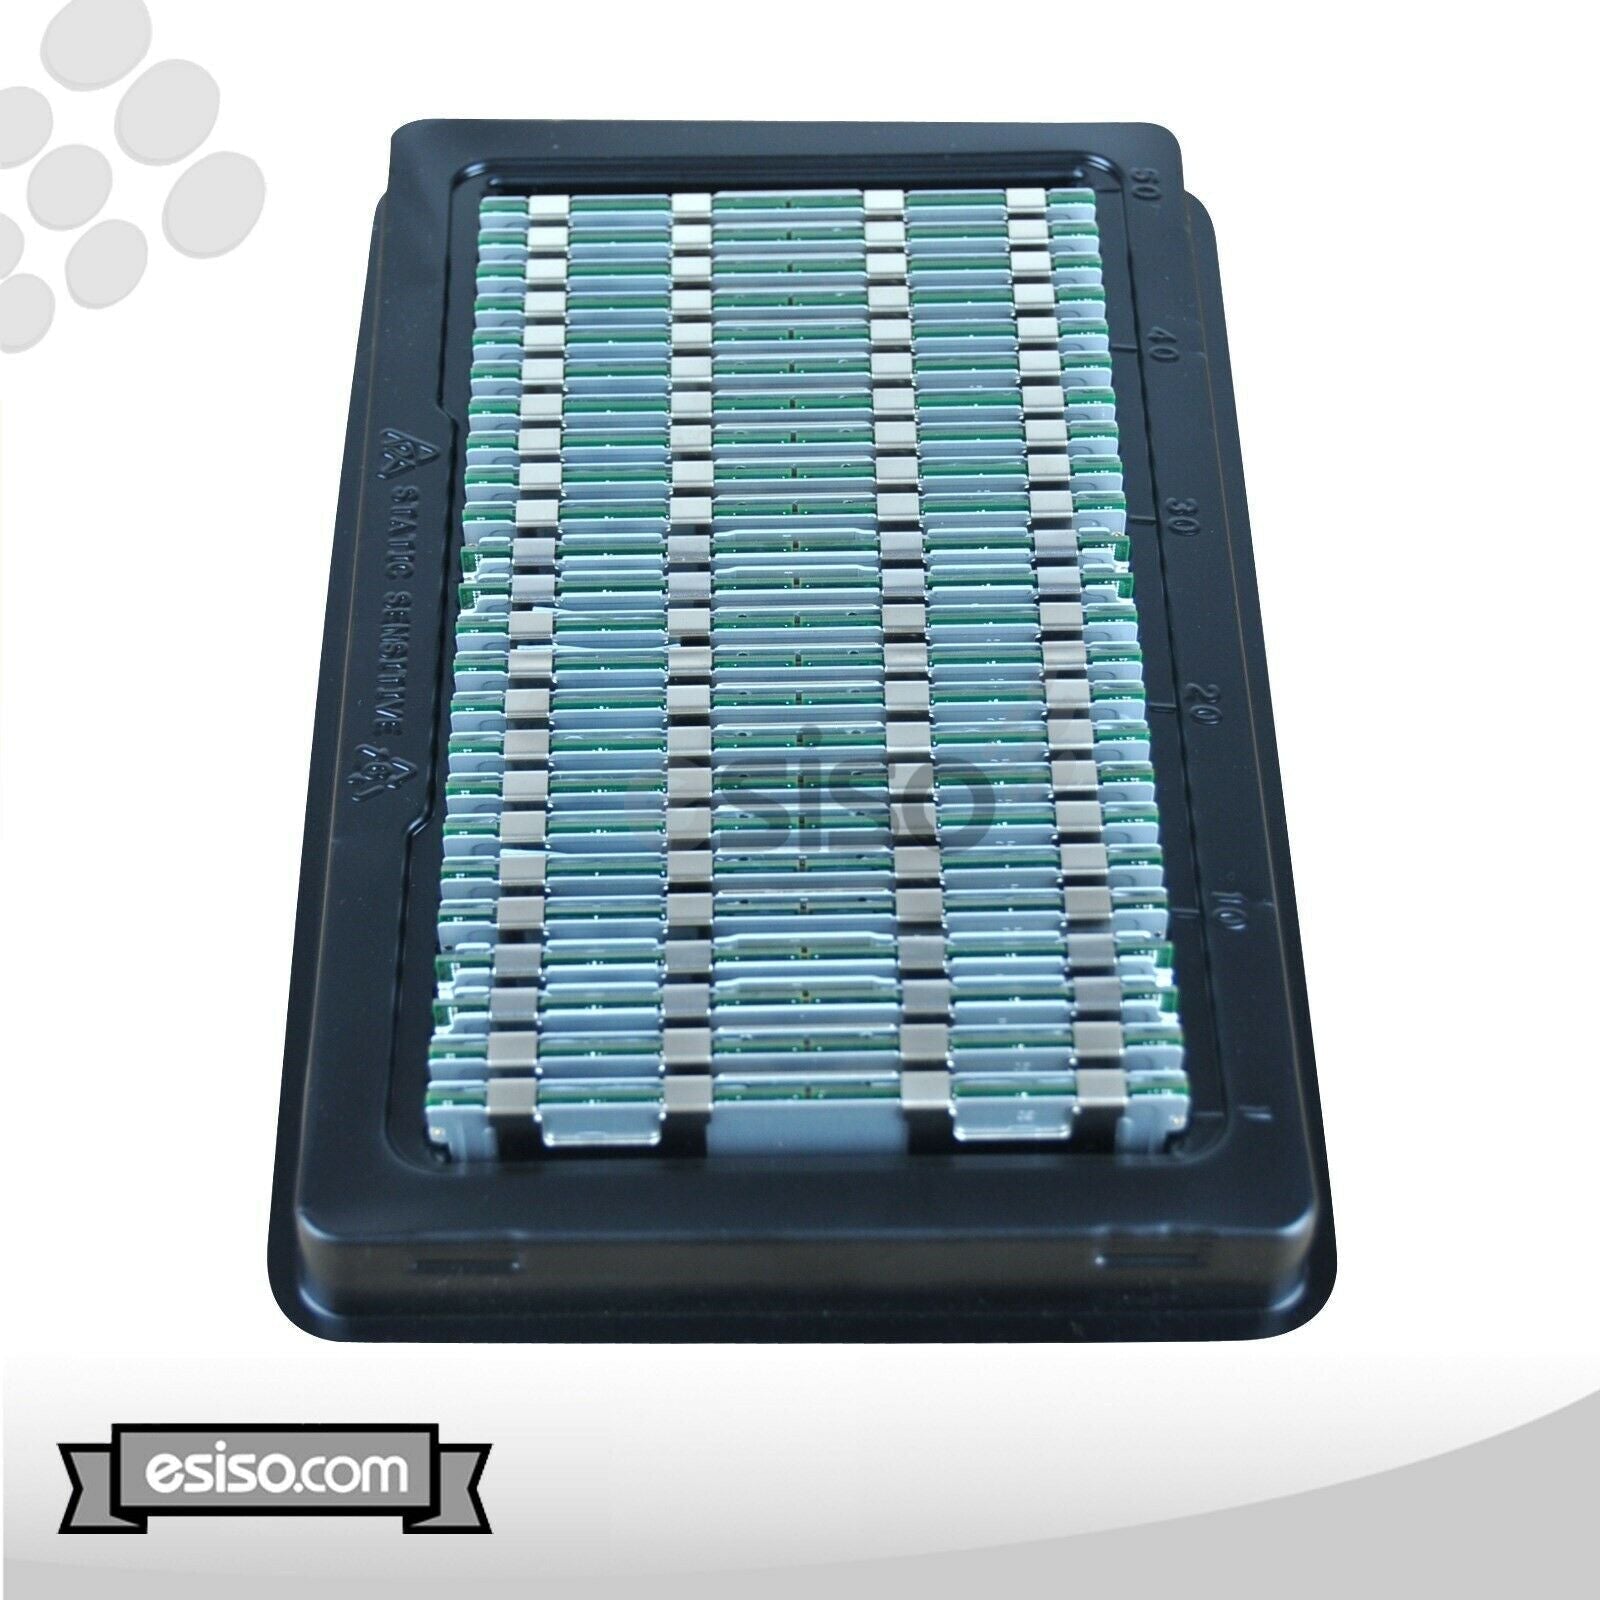 32GB (2x 16GB) 10600R RAM MEMORY MODULE FOR HP BL460C BL420C BL660c DL160 G8